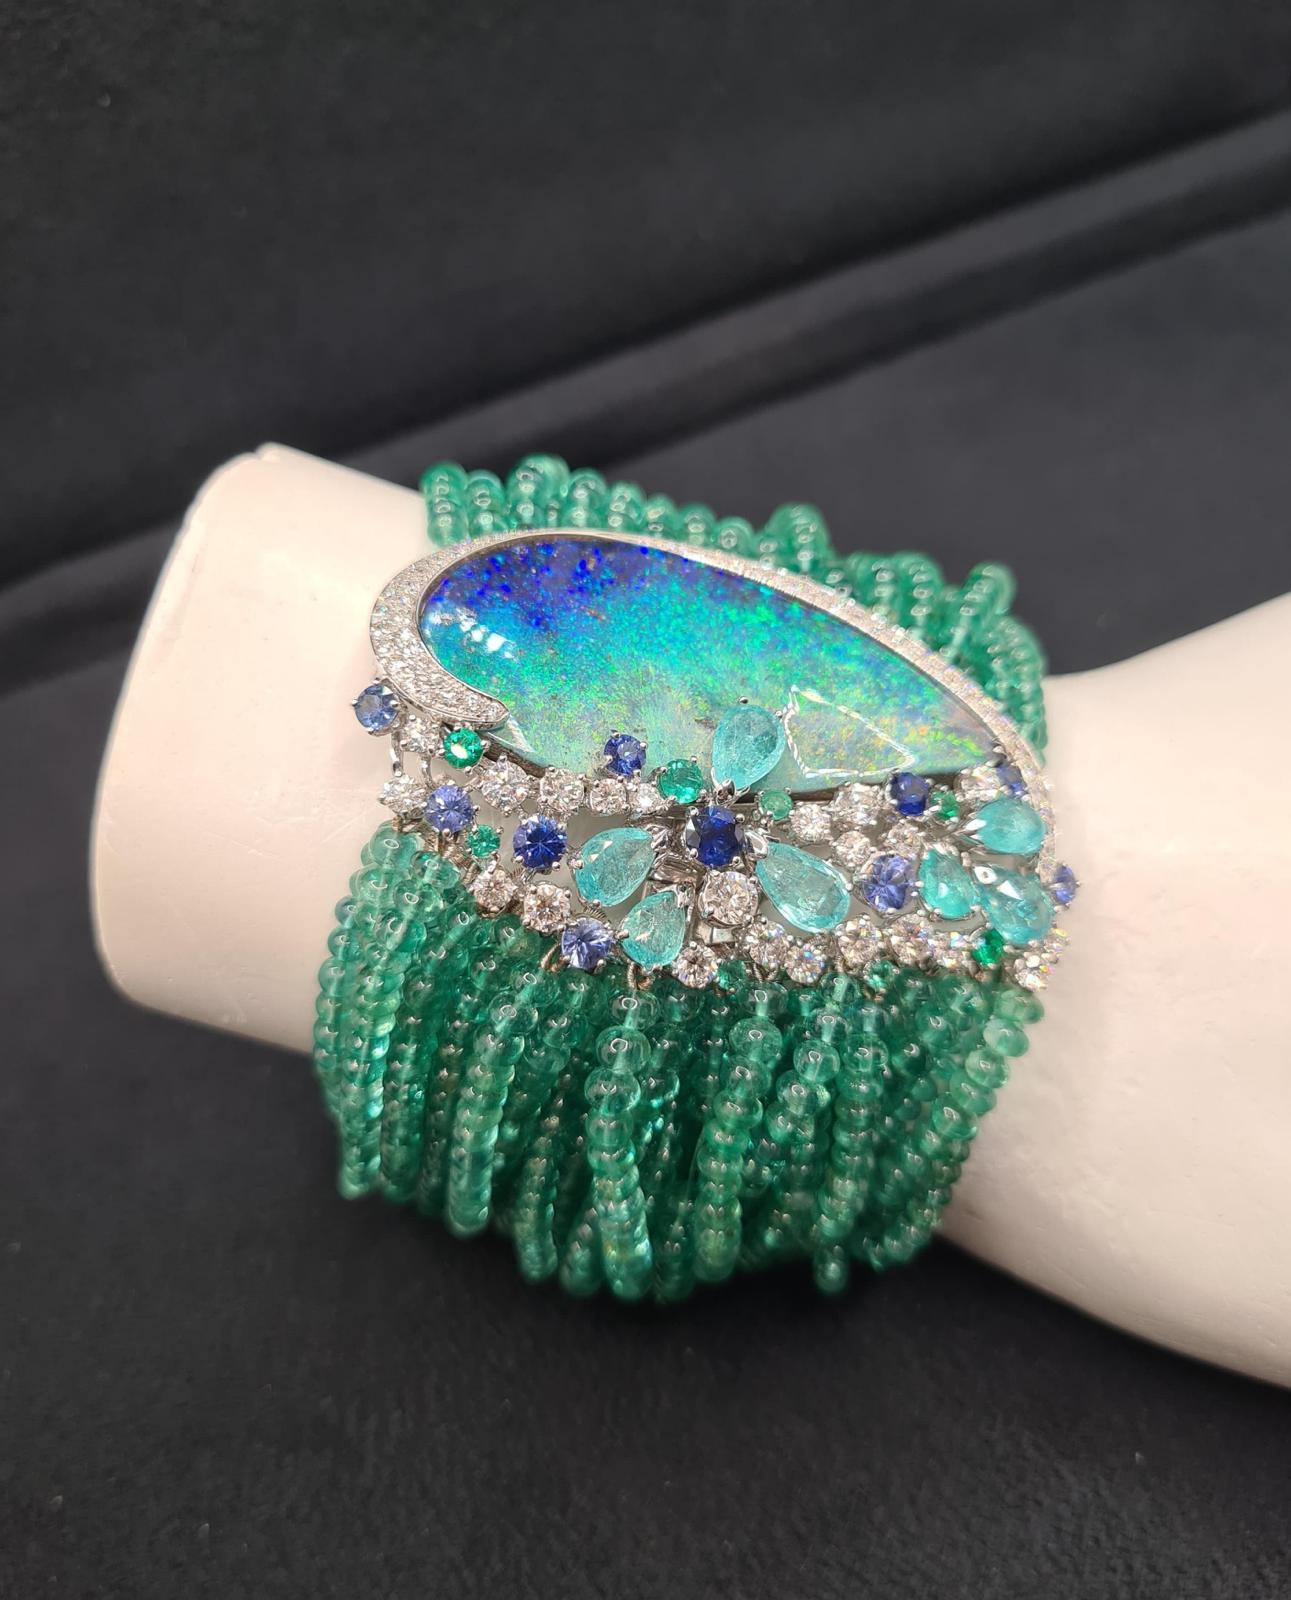 Voici le magnifique BRACELET POSEIDON EMERALD, une fusion époustouflante d'élégance et de luxe. Réalisé en or blanc, ce bracelet présente un éblouissant éventail de diamants pave, des fils d'émeraude et une opale bleue iridescente en forme de goutte